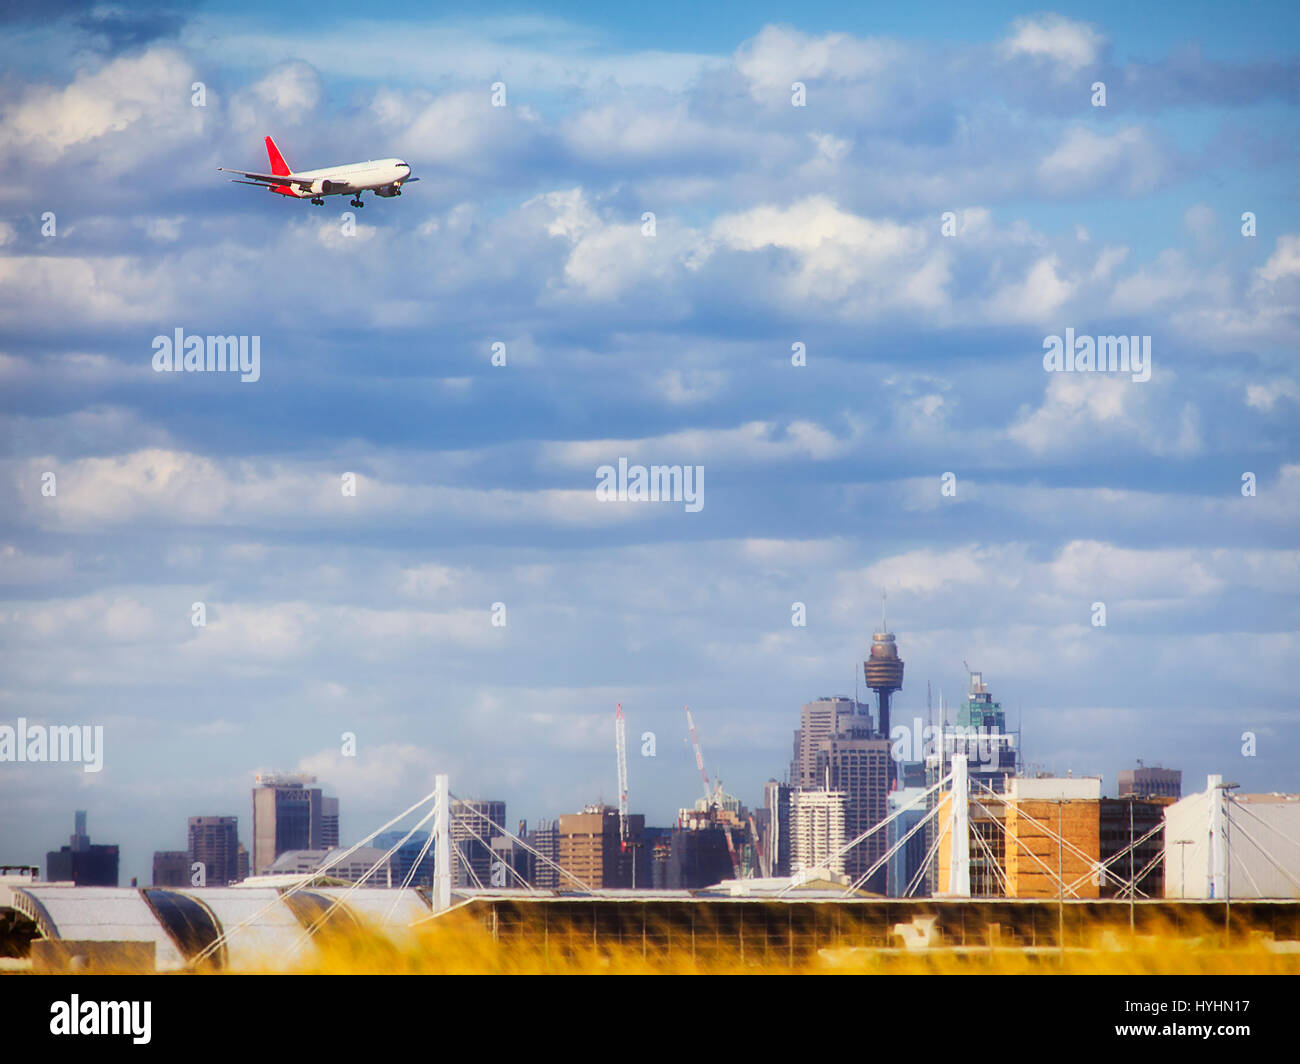 Große kommerzielle Passagierflugzeug nähert sich Sydney International Airport für Landung im Hinblick auf Stadttürme und Sehenswürdigkeiten. Stockfoto